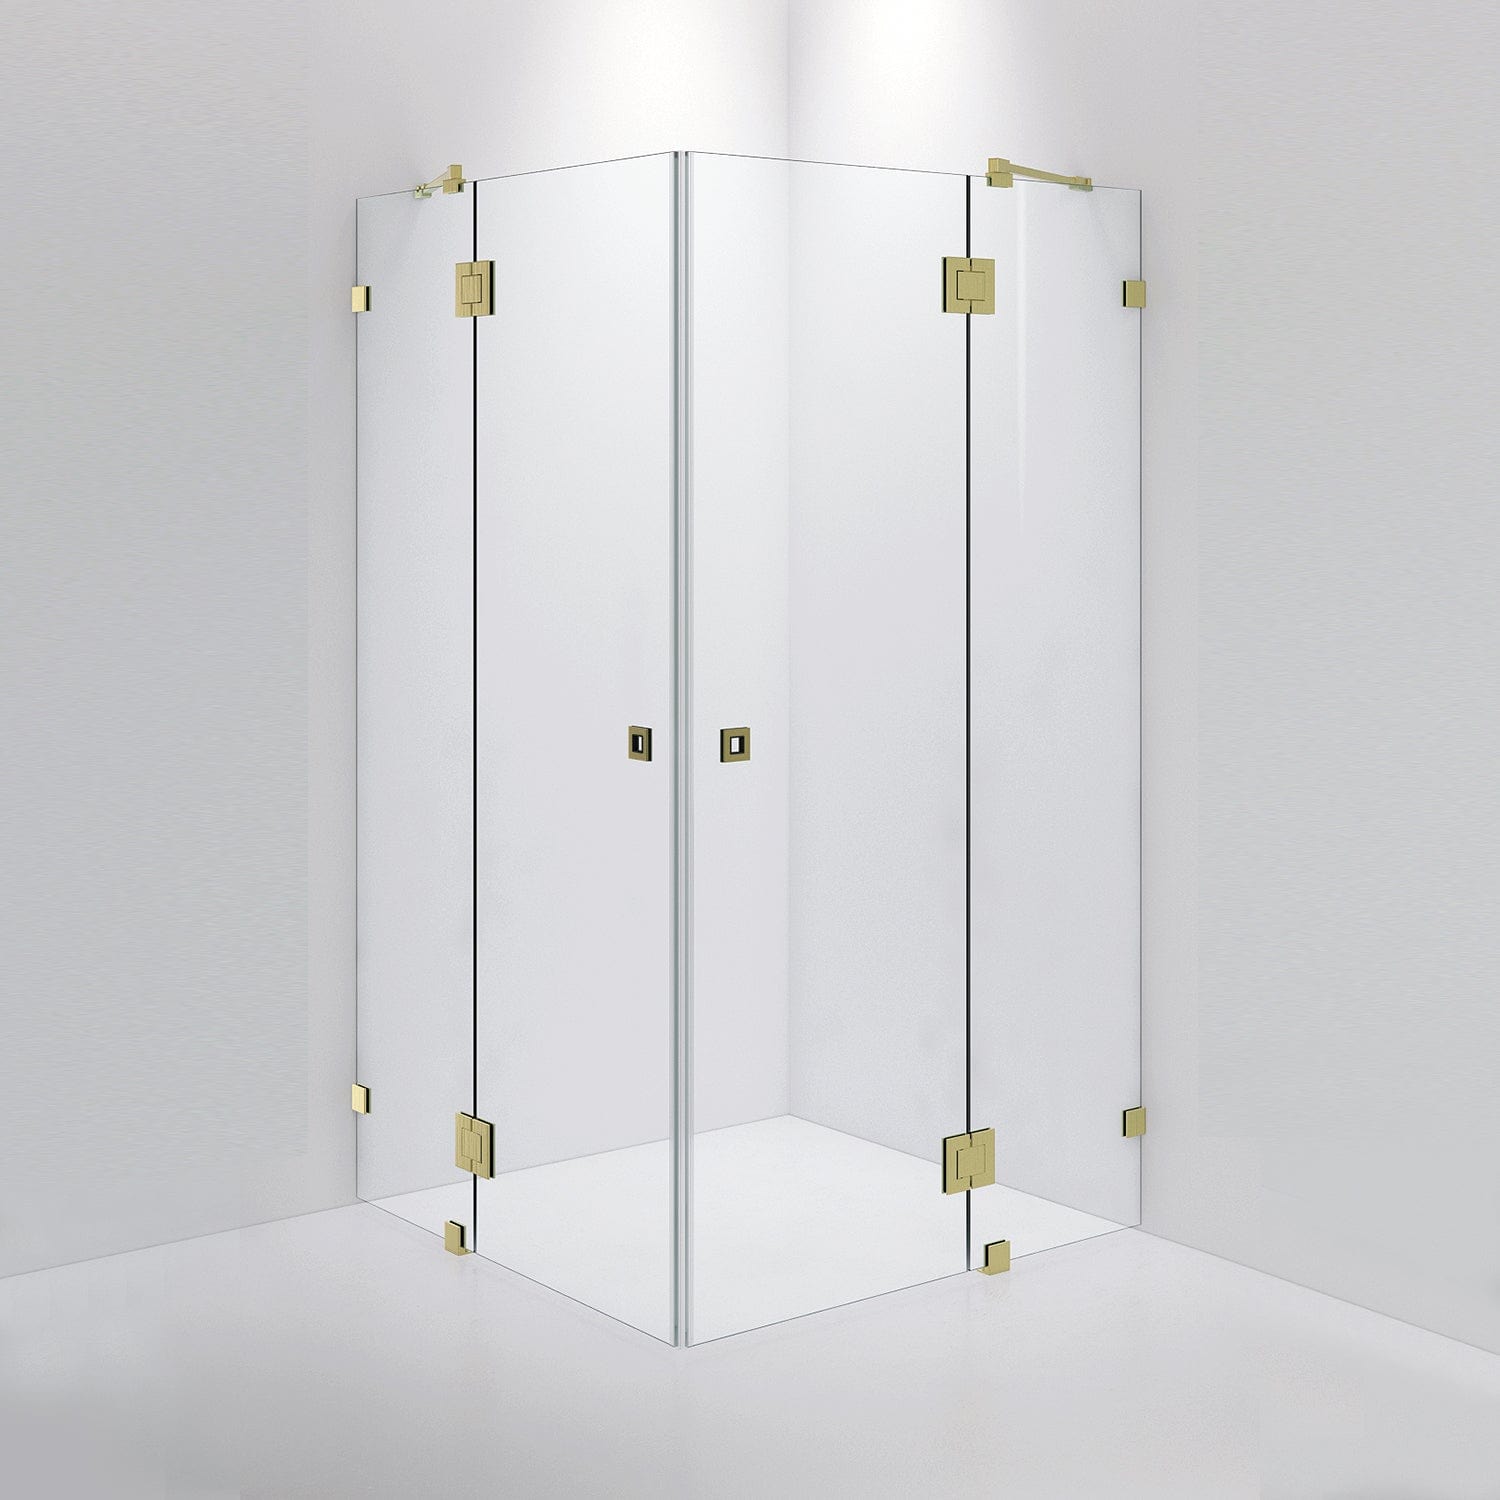 INR Iconic Nordic Rooms Dusjhjørne ARC 16 Måltilpasset Brushed Brass / Opal Klart Glass Dusjhjørne